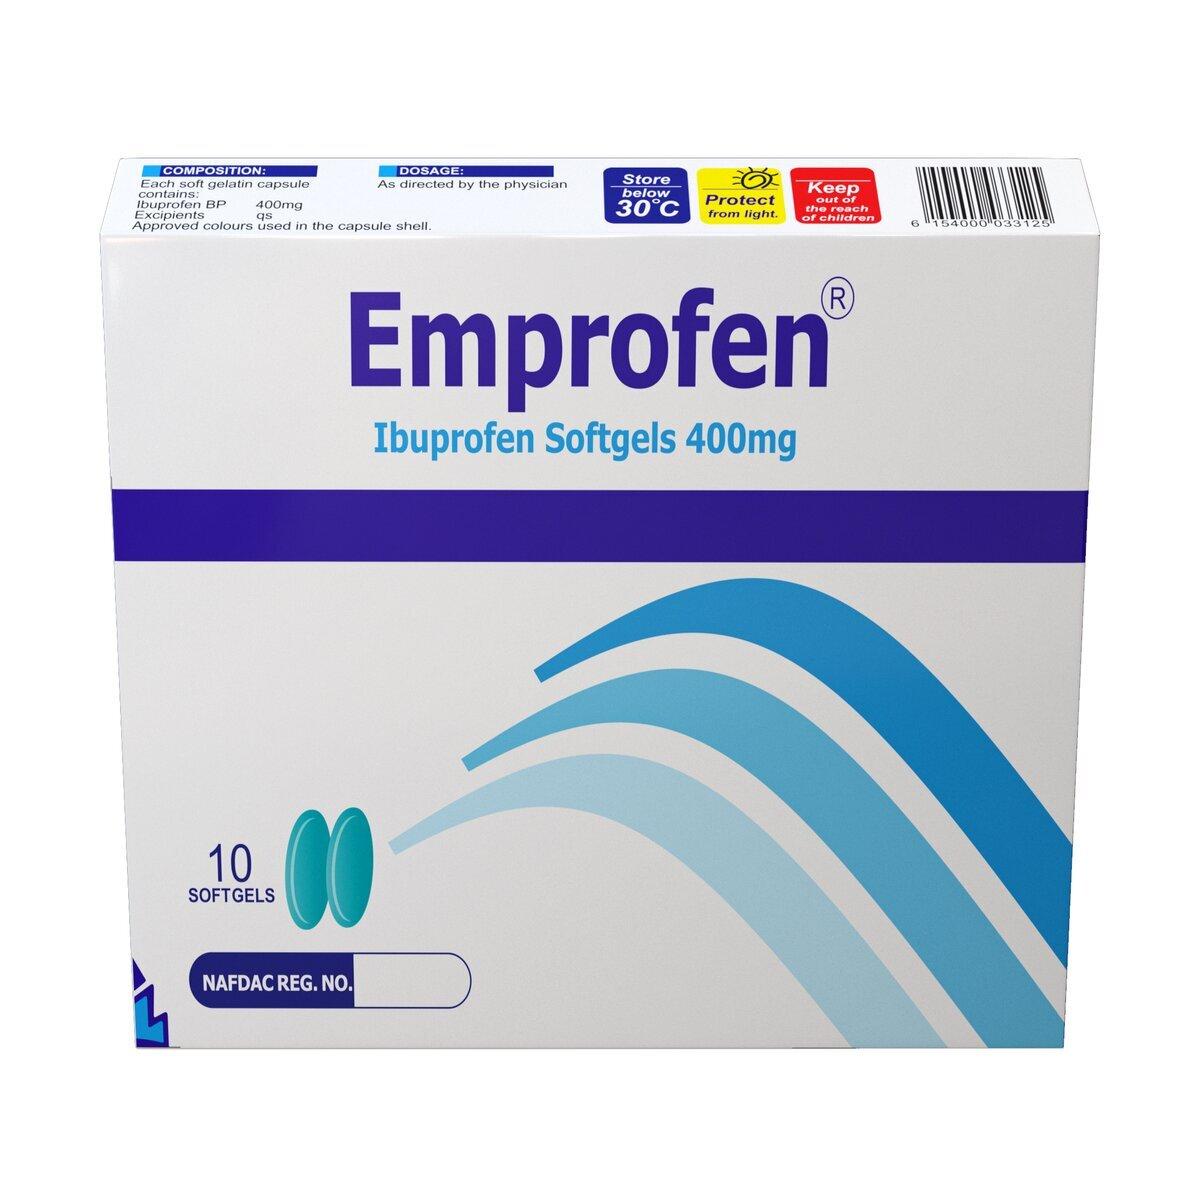 Emprofen (Ibuprofen) 400mg Softgels